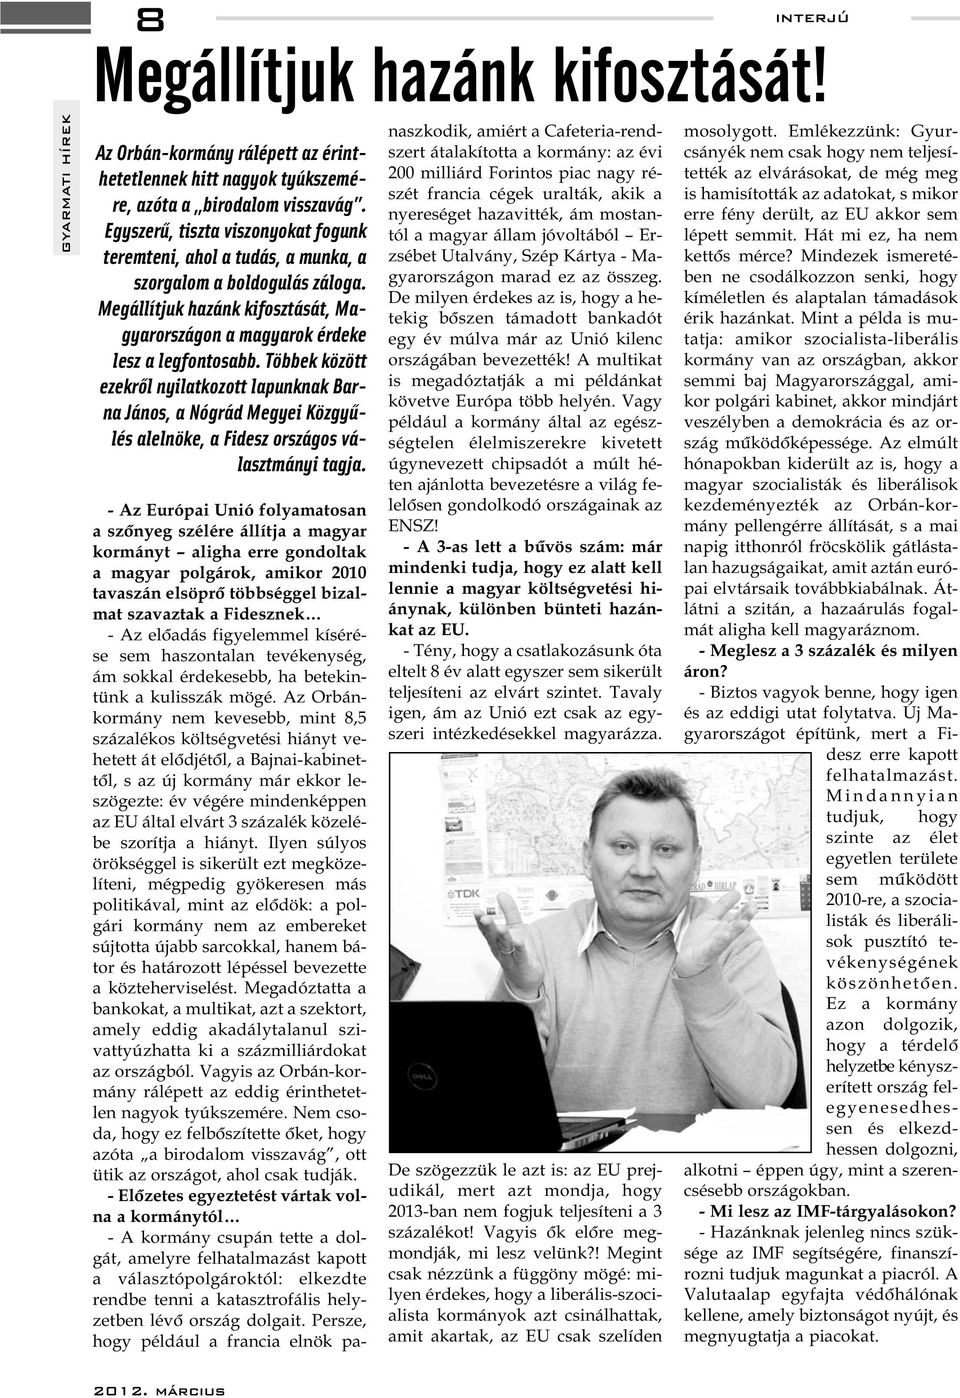 Többek között ezekről nyilatkozott lapunknak Barna János, a Nógrád Megyei Közgyűlés alelnöke, a Fidesz országos választmányi tagja.